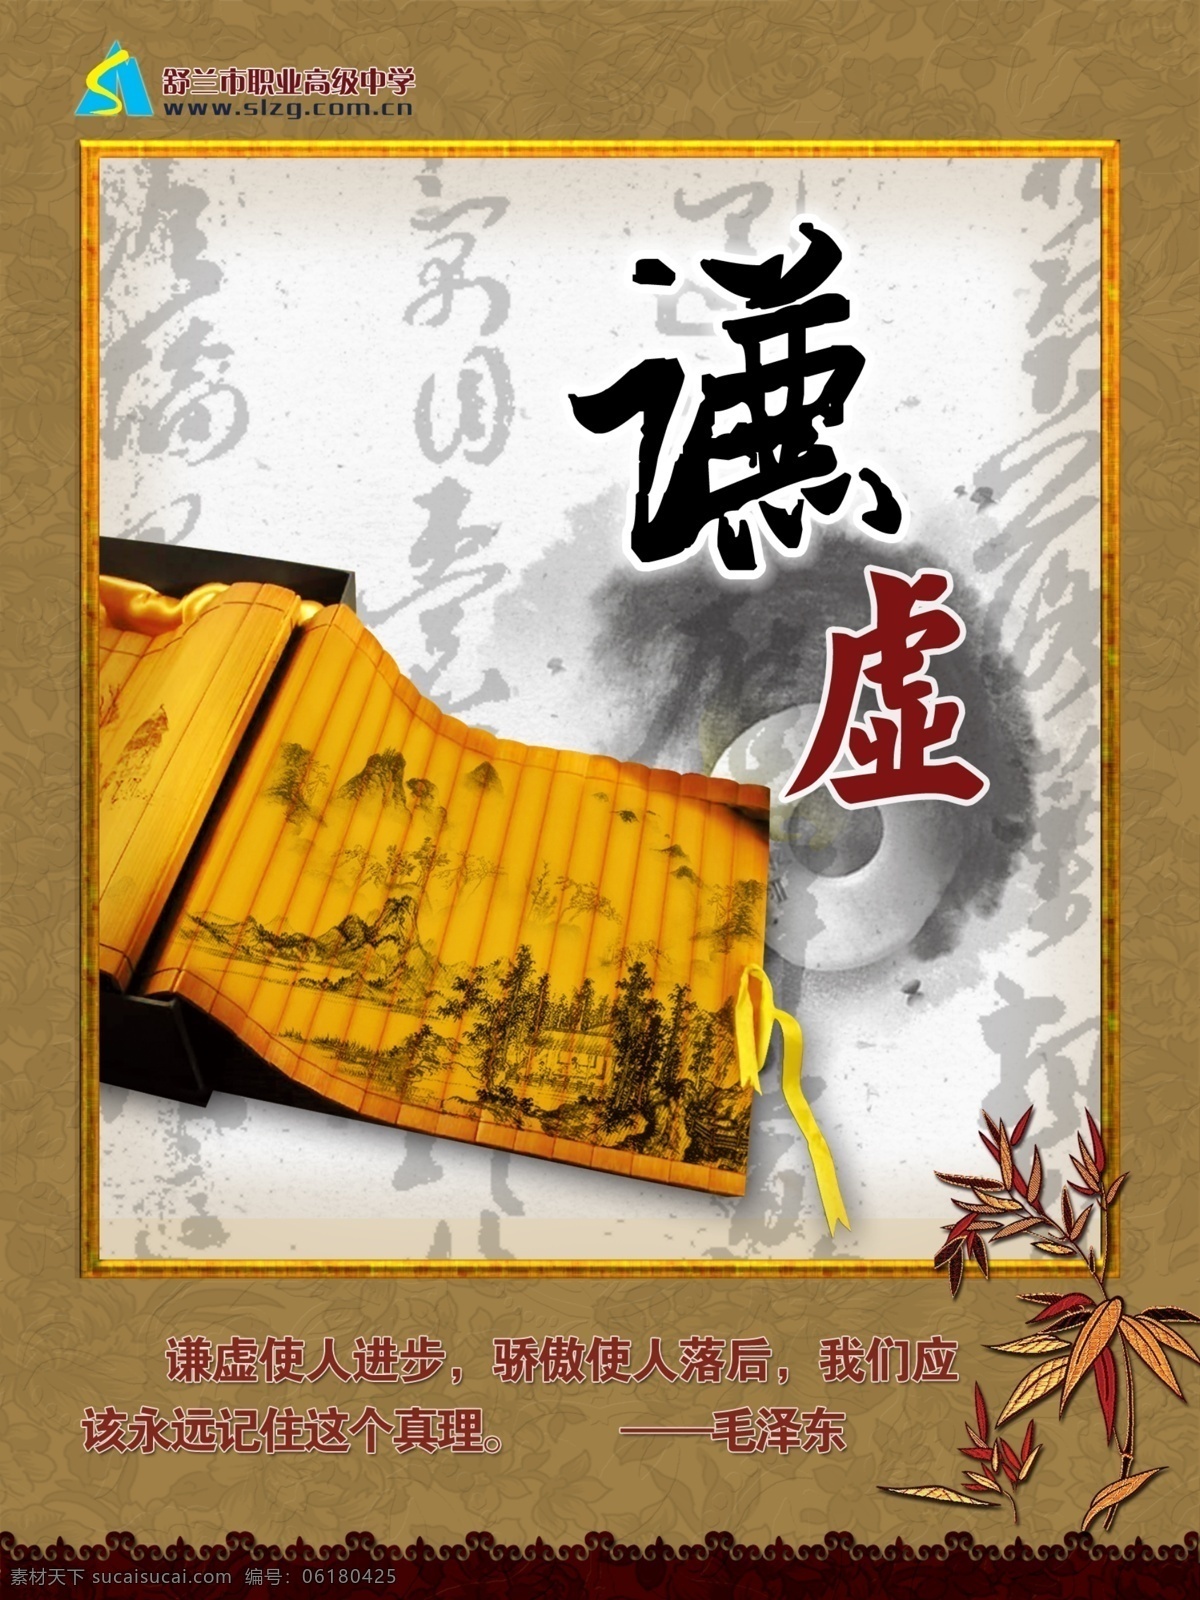 室内展板 职高 谦虚 展板 校园文化 中国风 学校 高中 中学 书法 展板模板 广告设计模板 源文件